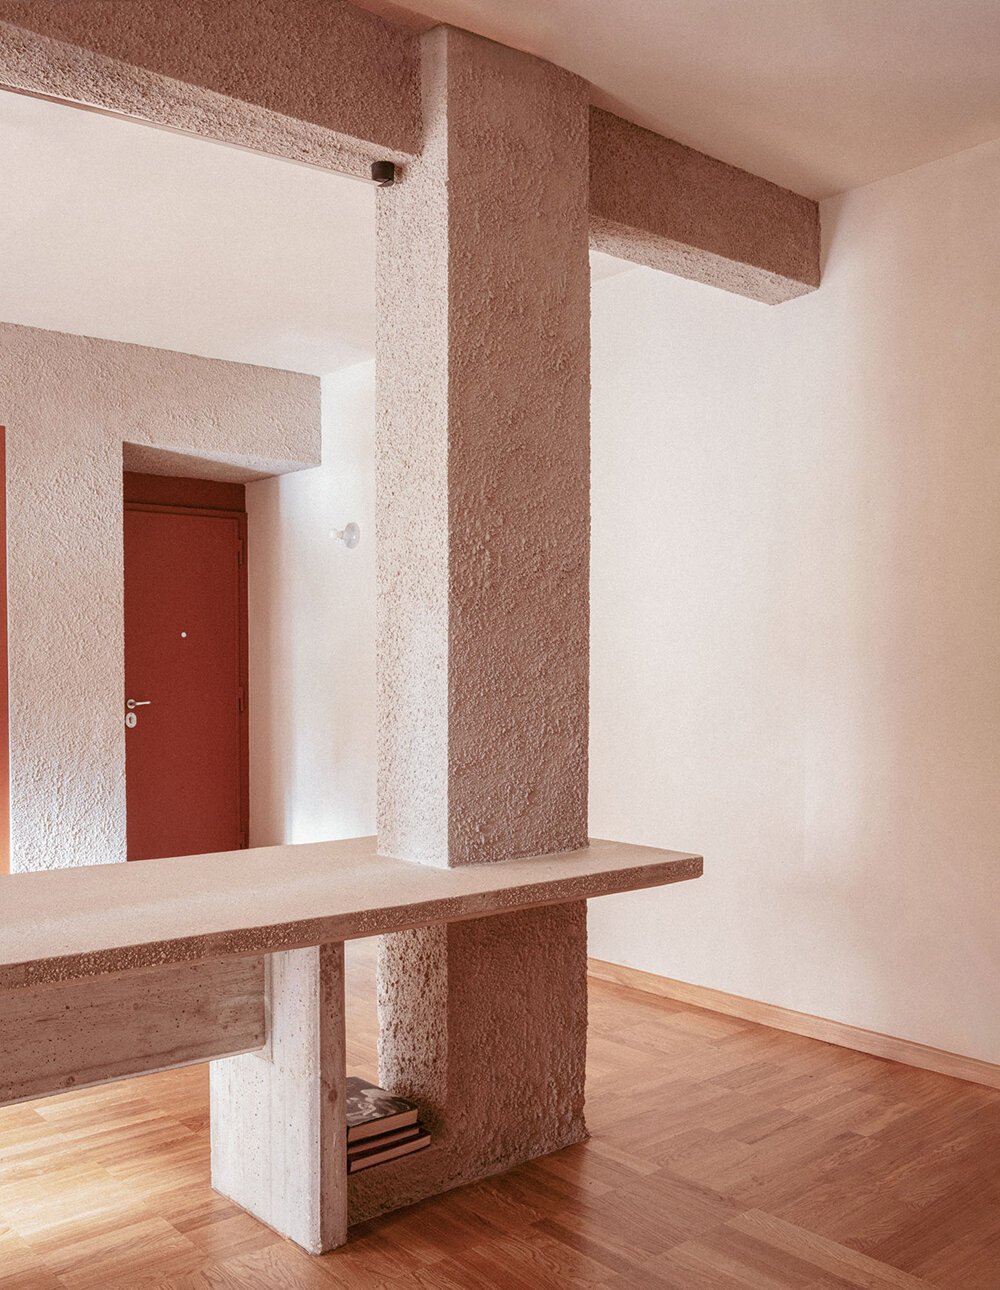 Открытая колонна занимает центральное место в отреставрированной квартире студии Traccia 1970-х годов в Риме